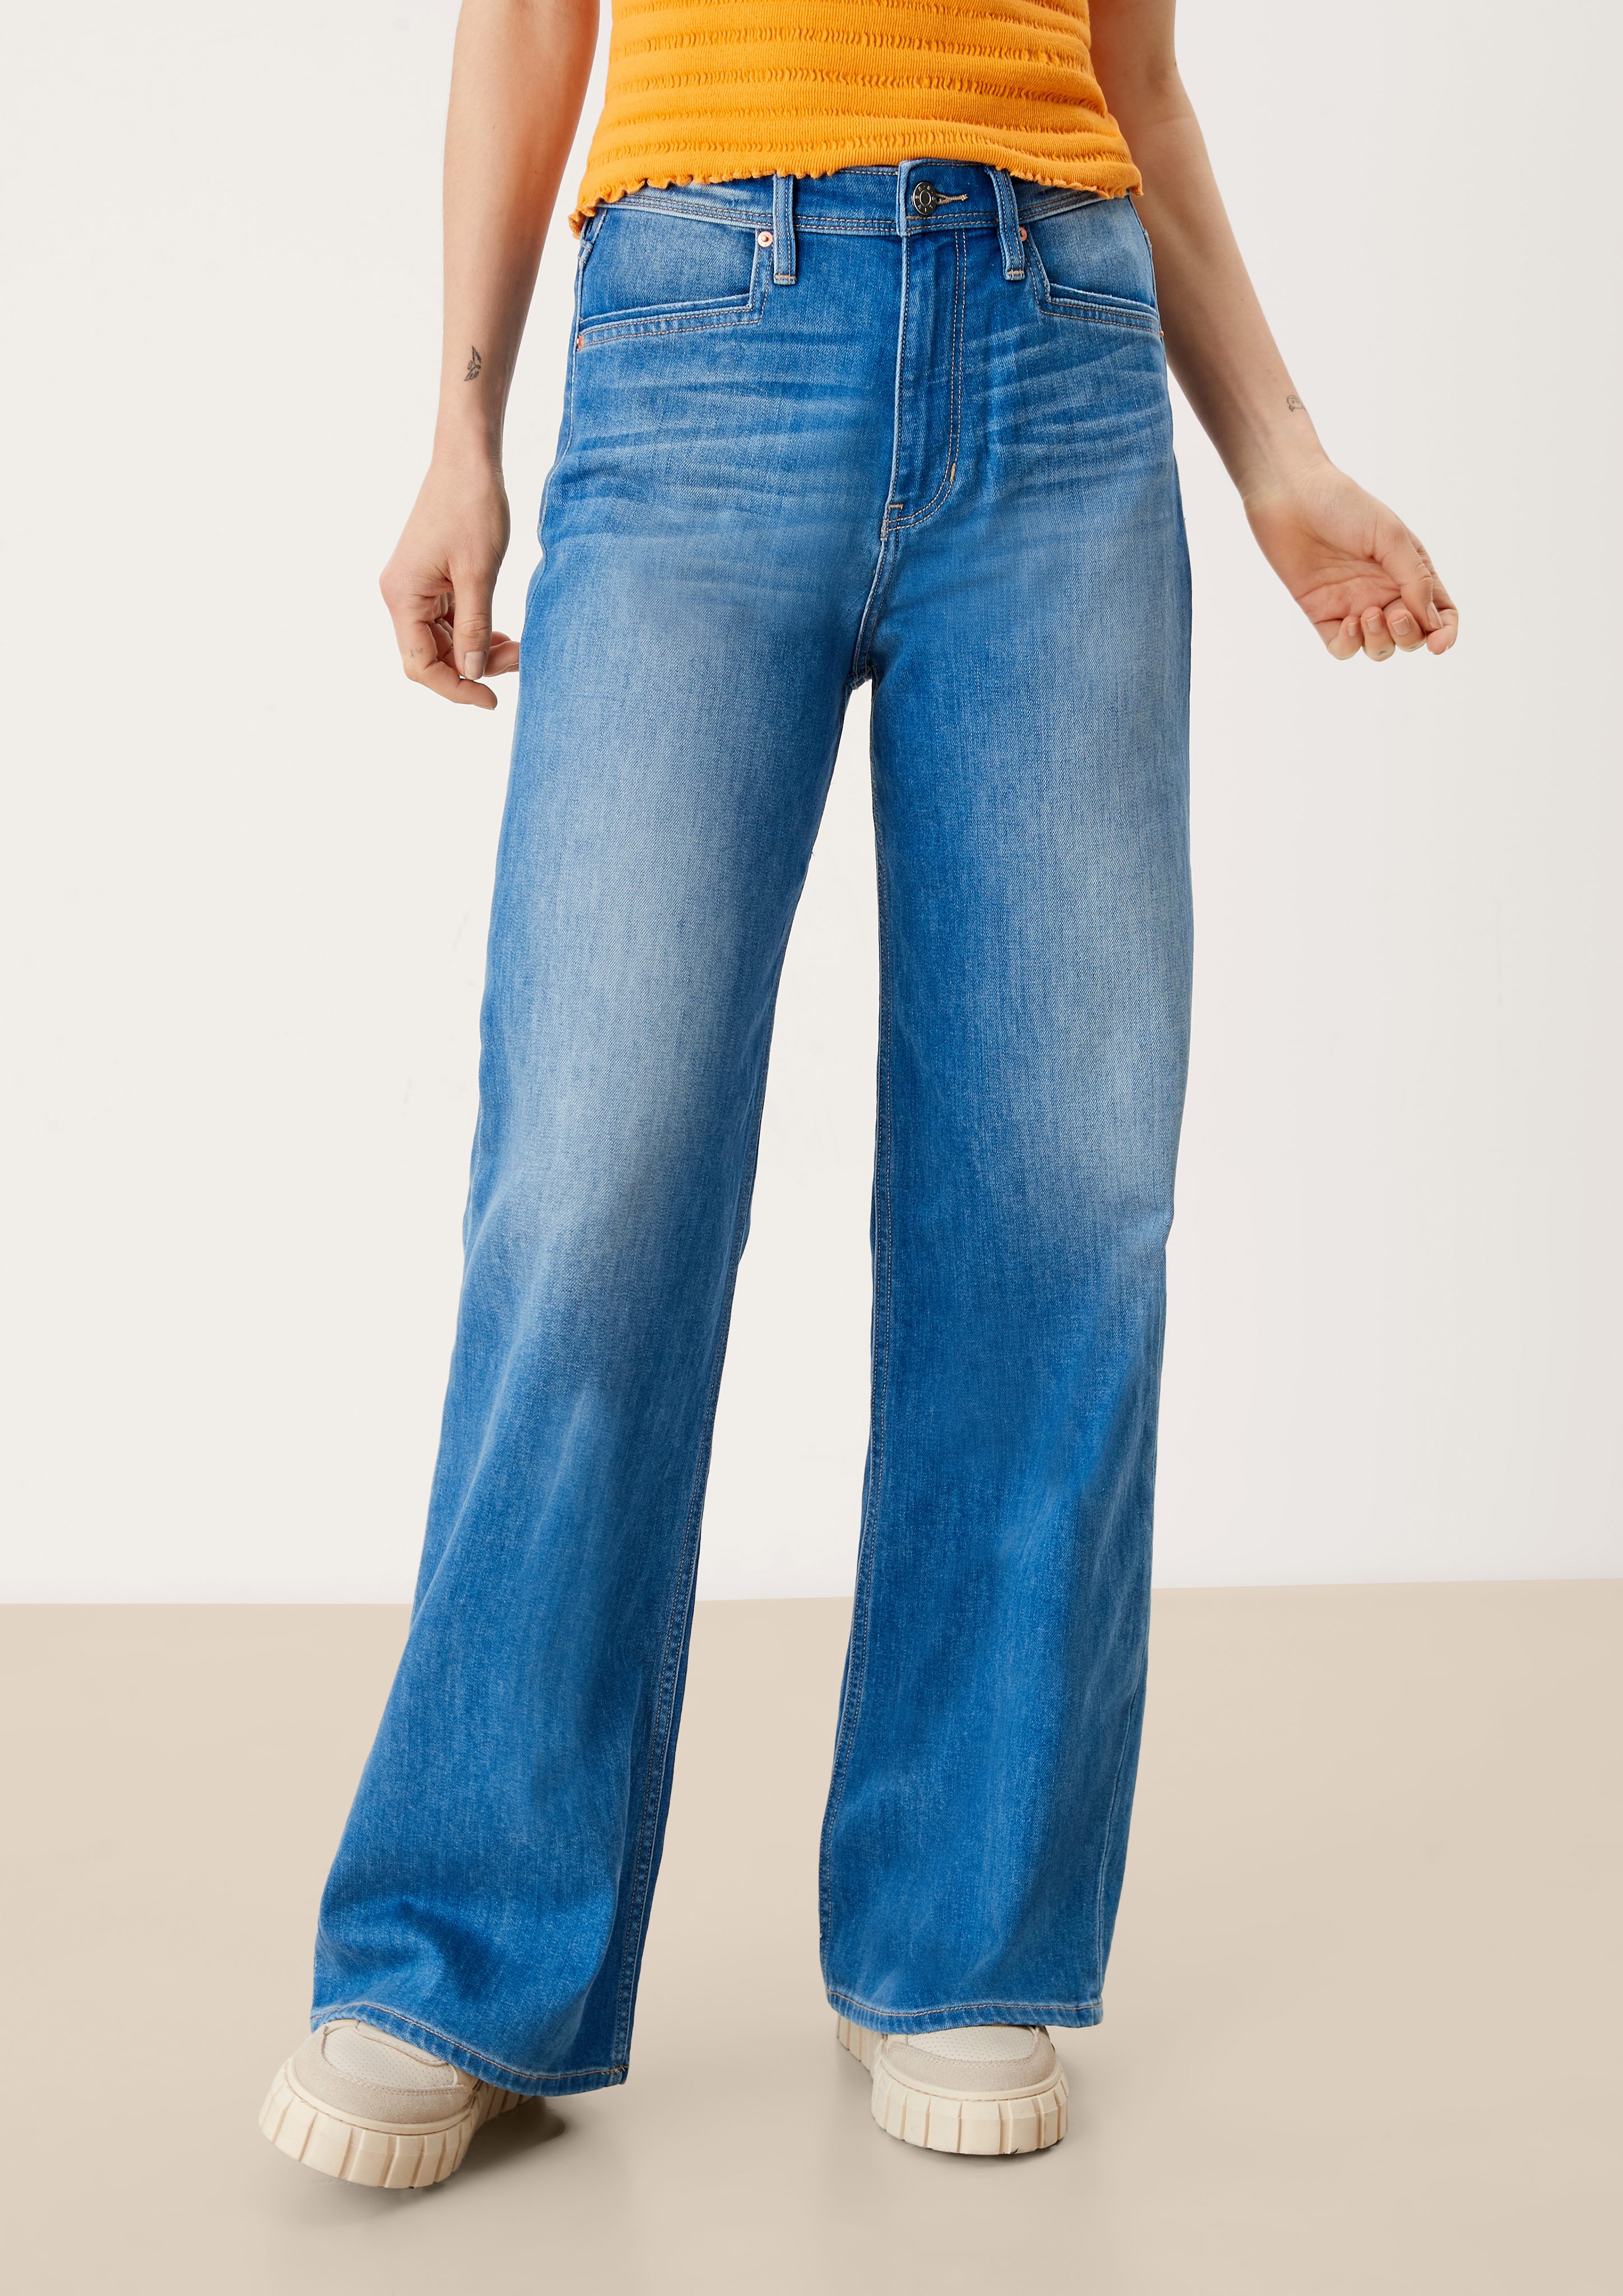 Leg Suri / Leder-Patch, High Jeans s.Oliver 5-Pocket-Jeans / / Regular Rise Fit Waschung Wide blue